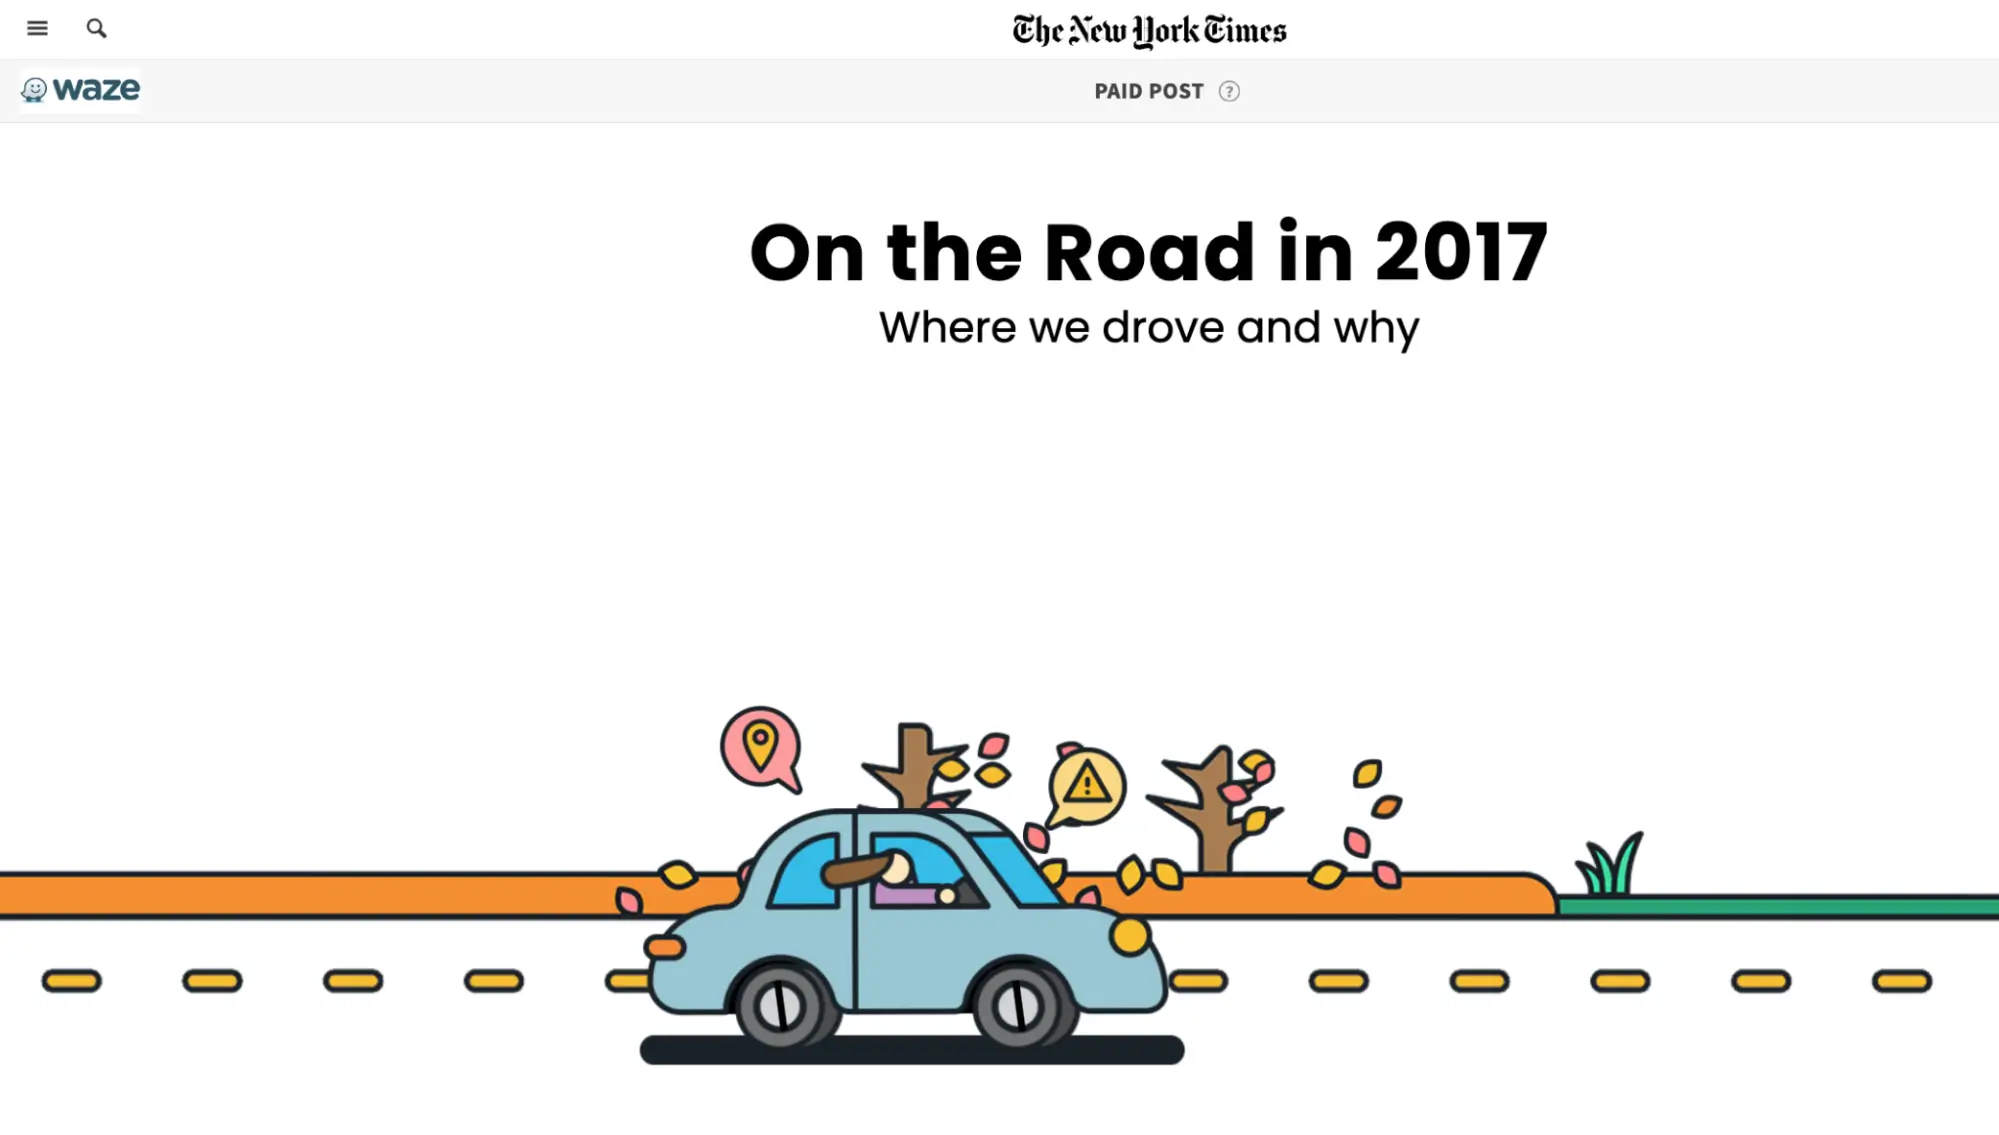 この画像は、ニューヨーク タイムズと提携して作成された Waze の「On the Road」キャンペーンを示しており、実際のアプリ データに基づくインタラクティブ コンテンツが特徴です。このキャンペーンは、運転トレンドとその背後にある理由を明らかにすることを目的としており、キャッチーなグラフィックを備えたインタラクティブなページを通じて有益で共有可能なコンテンツを提供します。